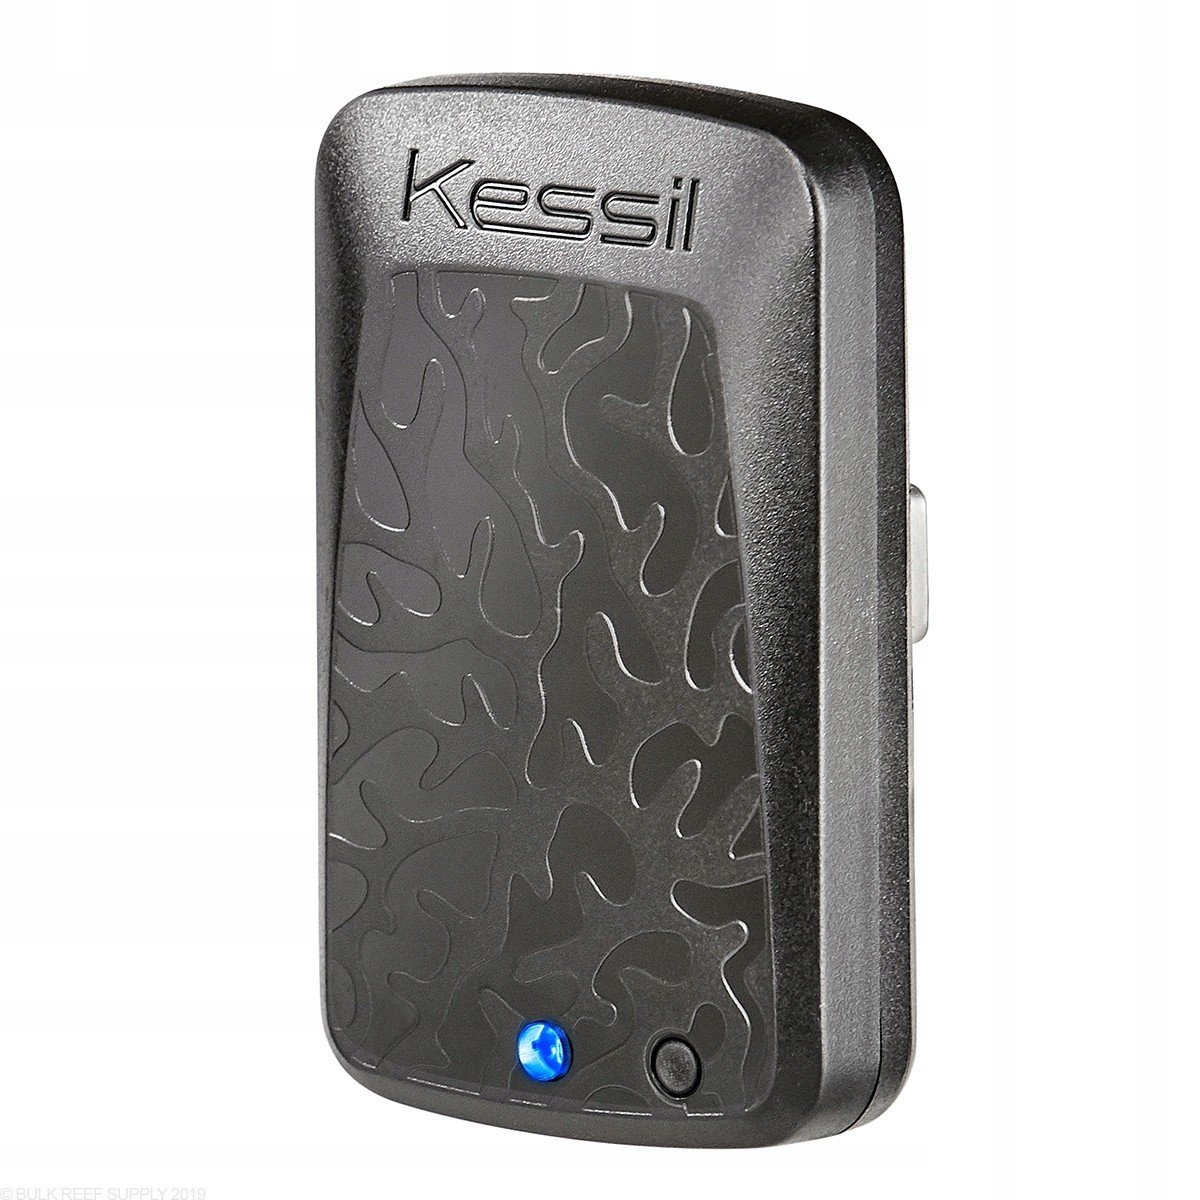 KessilX WiFi Dongle (bezdrátový modul)